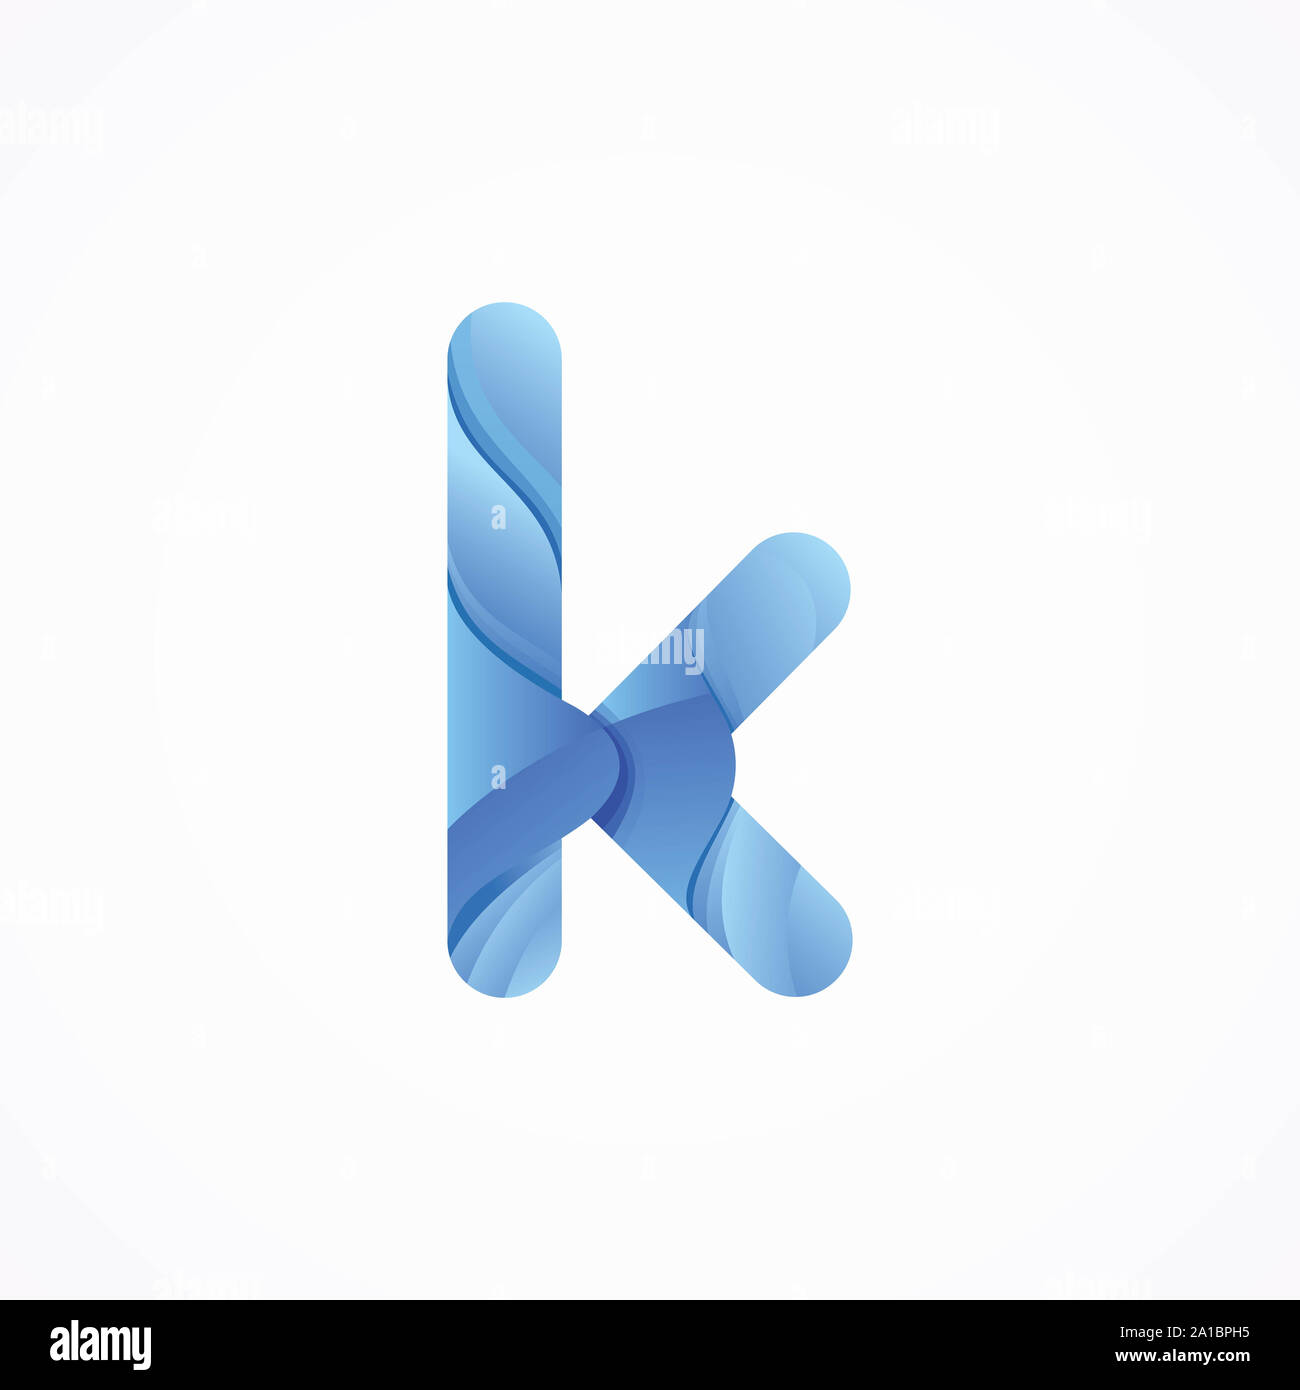 infinity k Letter Logo design template Stock Photo